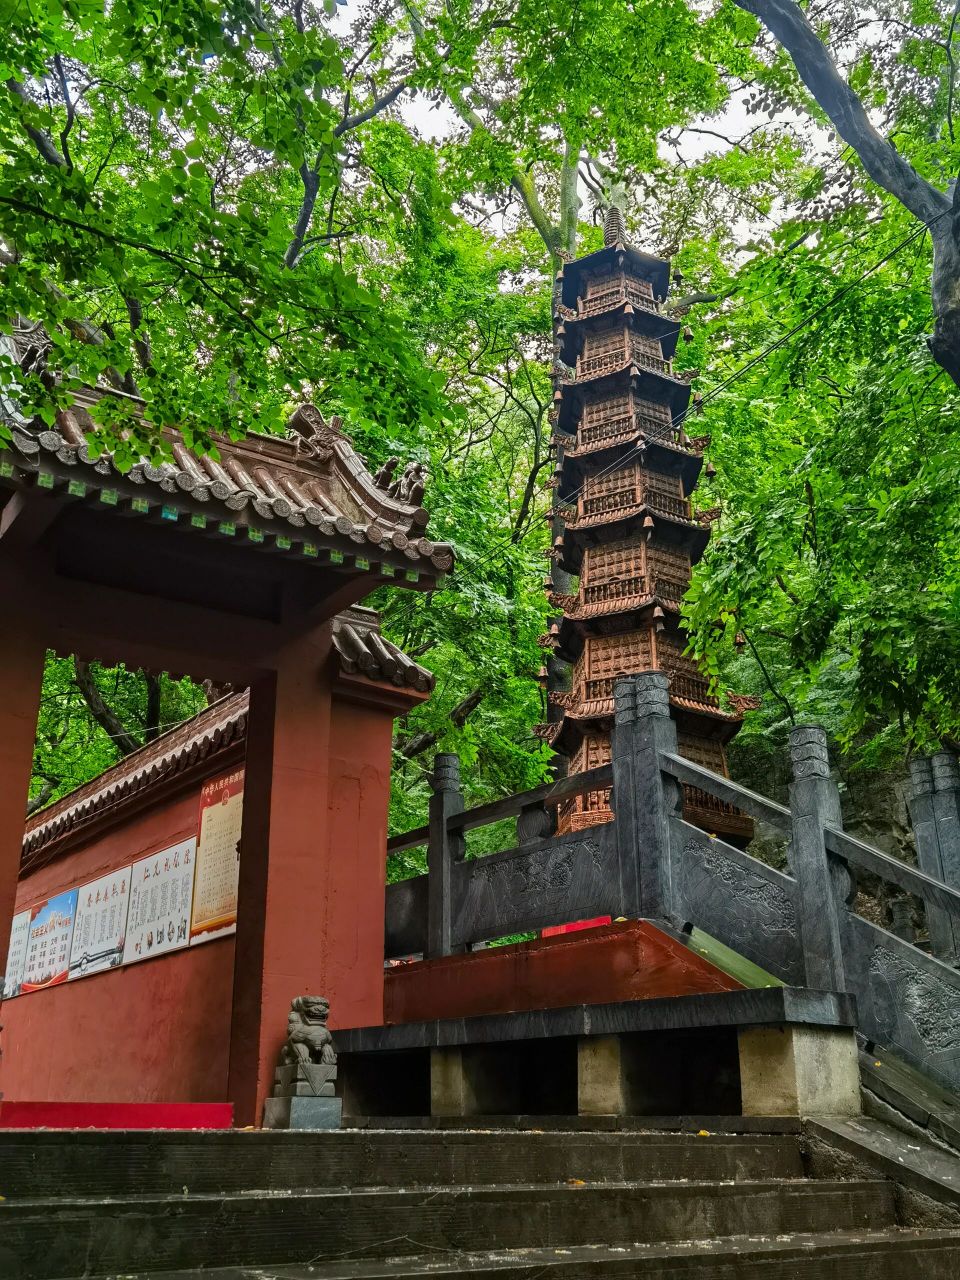 天门寺,位于安徽萧县境内,距离江苏徐州市区37公里,景区内古树参天